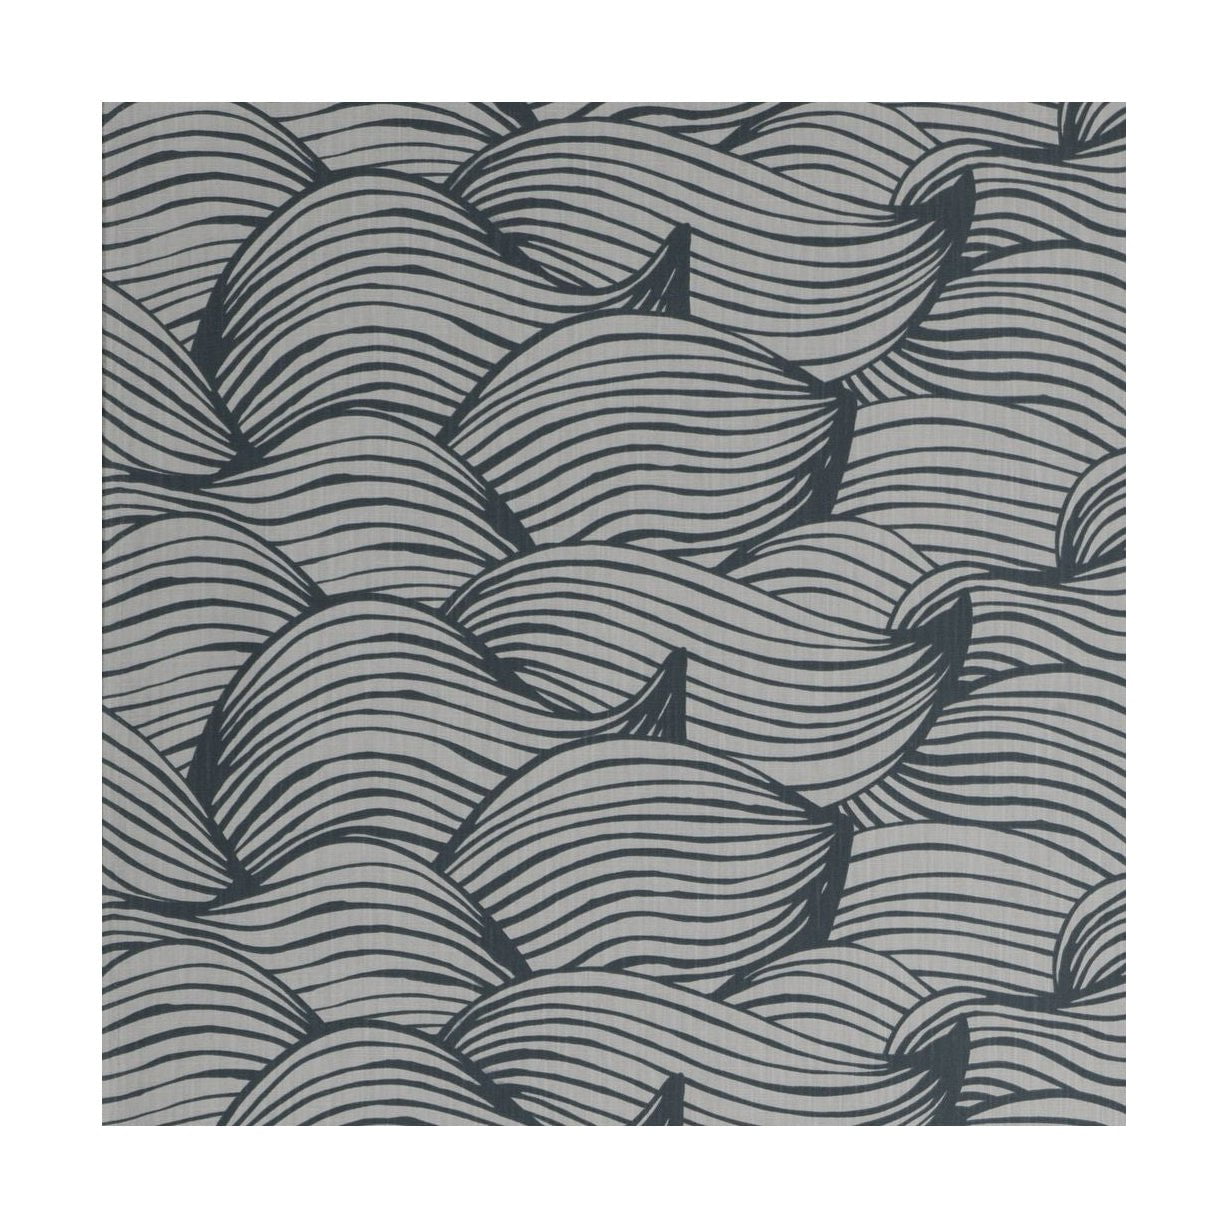 Spira Wave CTC -stof met acrylbreedte 145 cm (prijs per meter), blauw